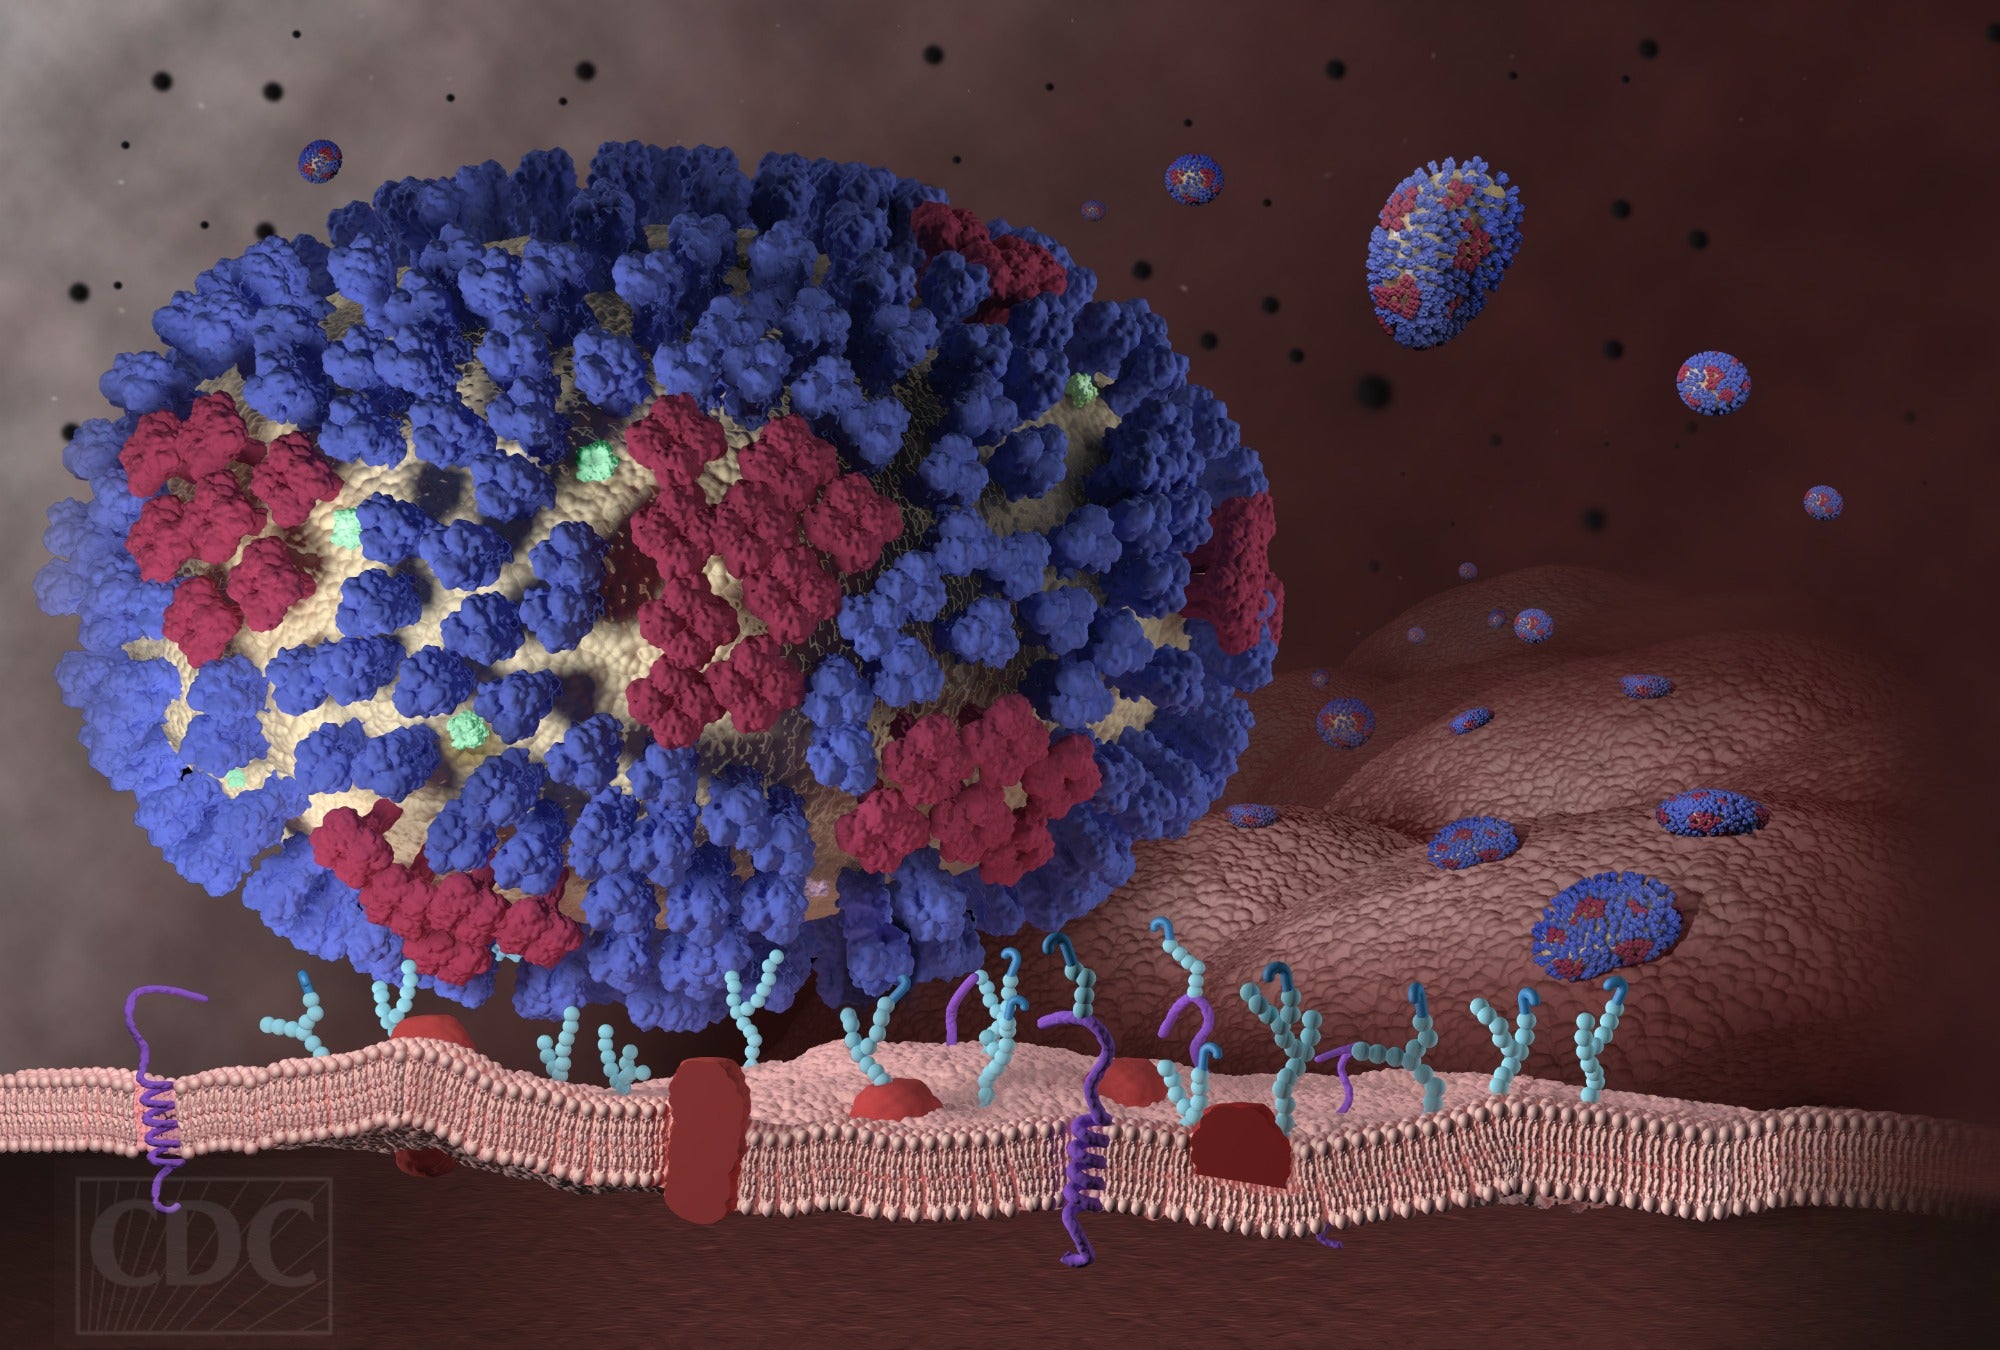 La gripe y el RSV crean un virus híbrido en condiciones de laboratorio